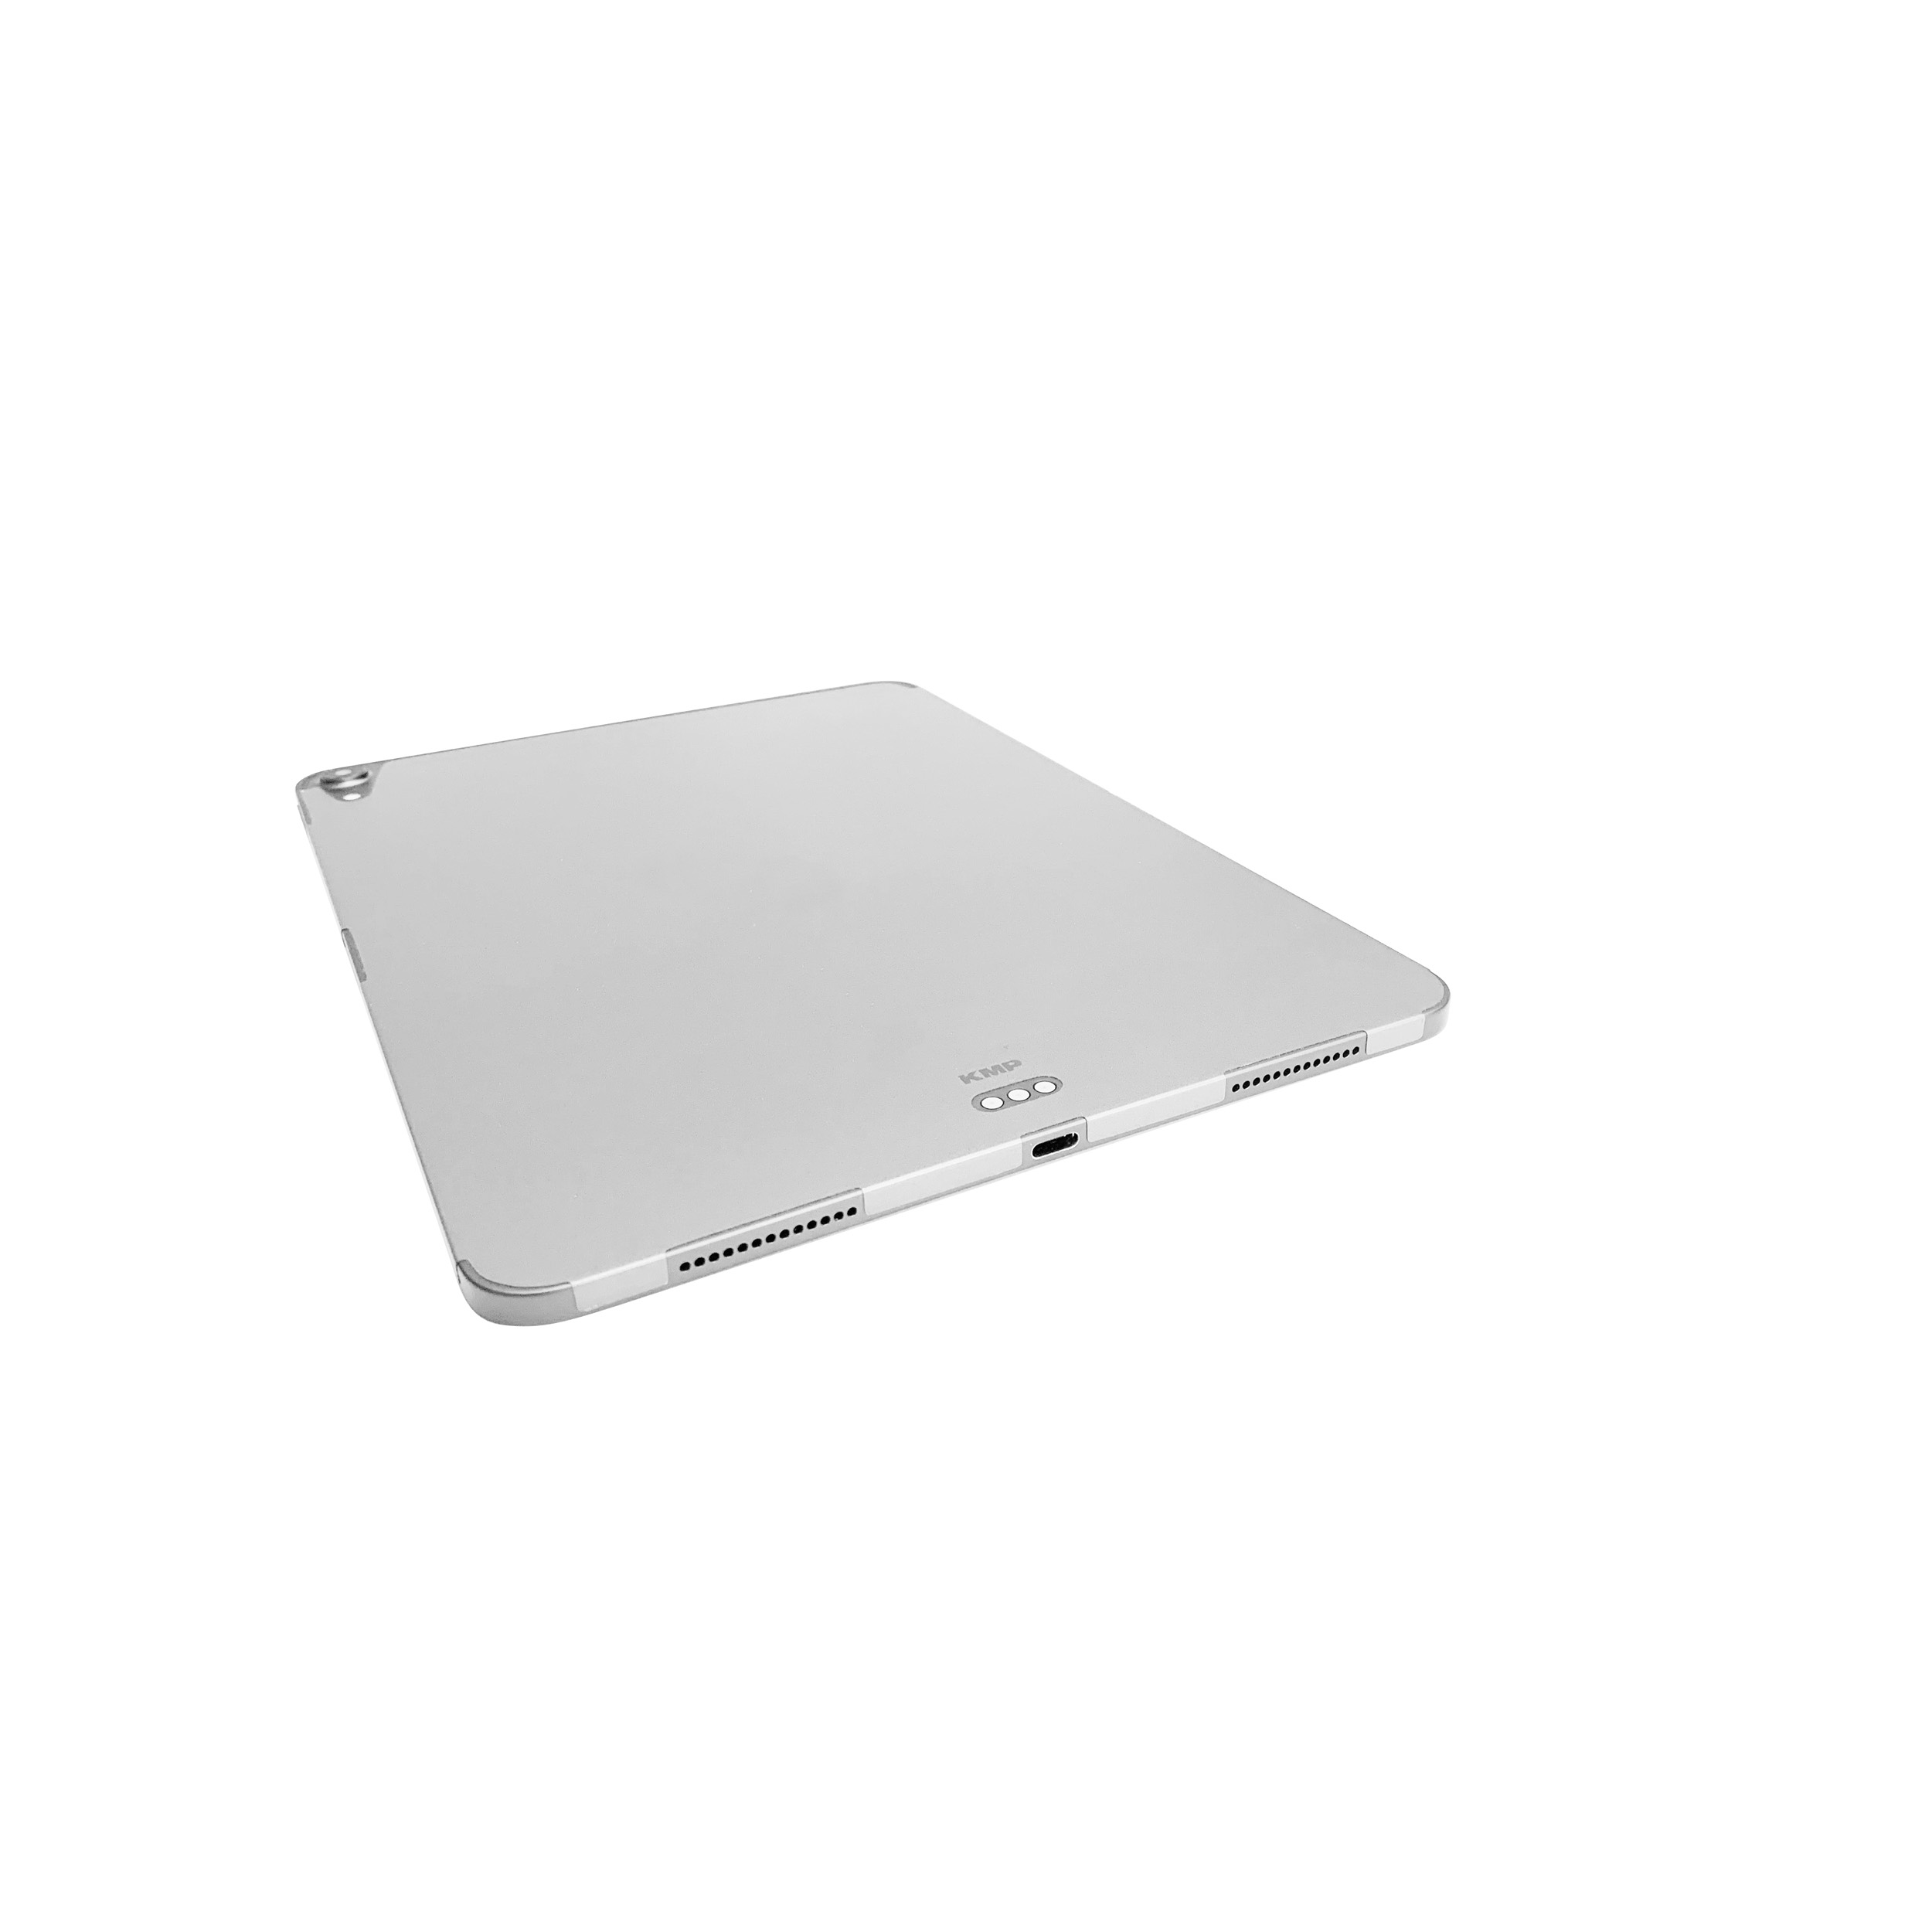 KMP Schutzfolie für iPad silver AntiScratchLevel, 6H skin Protective Apple 11 für Rückseite Vinylfilm, Silver Cover Pro Flip 3M-Material